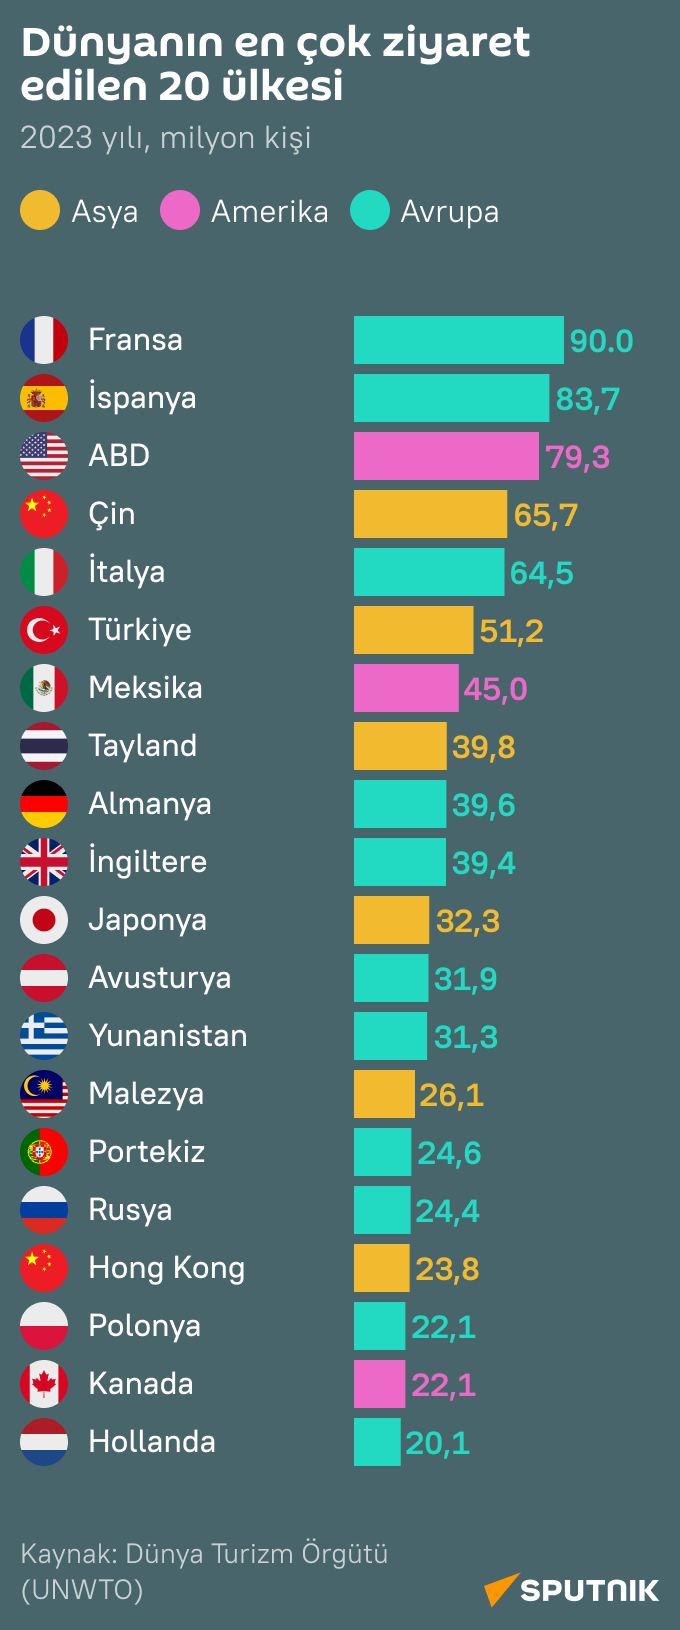 2023'te en çok ziyaret edilen ülkeler hangileri? - Sputnik Türkiye